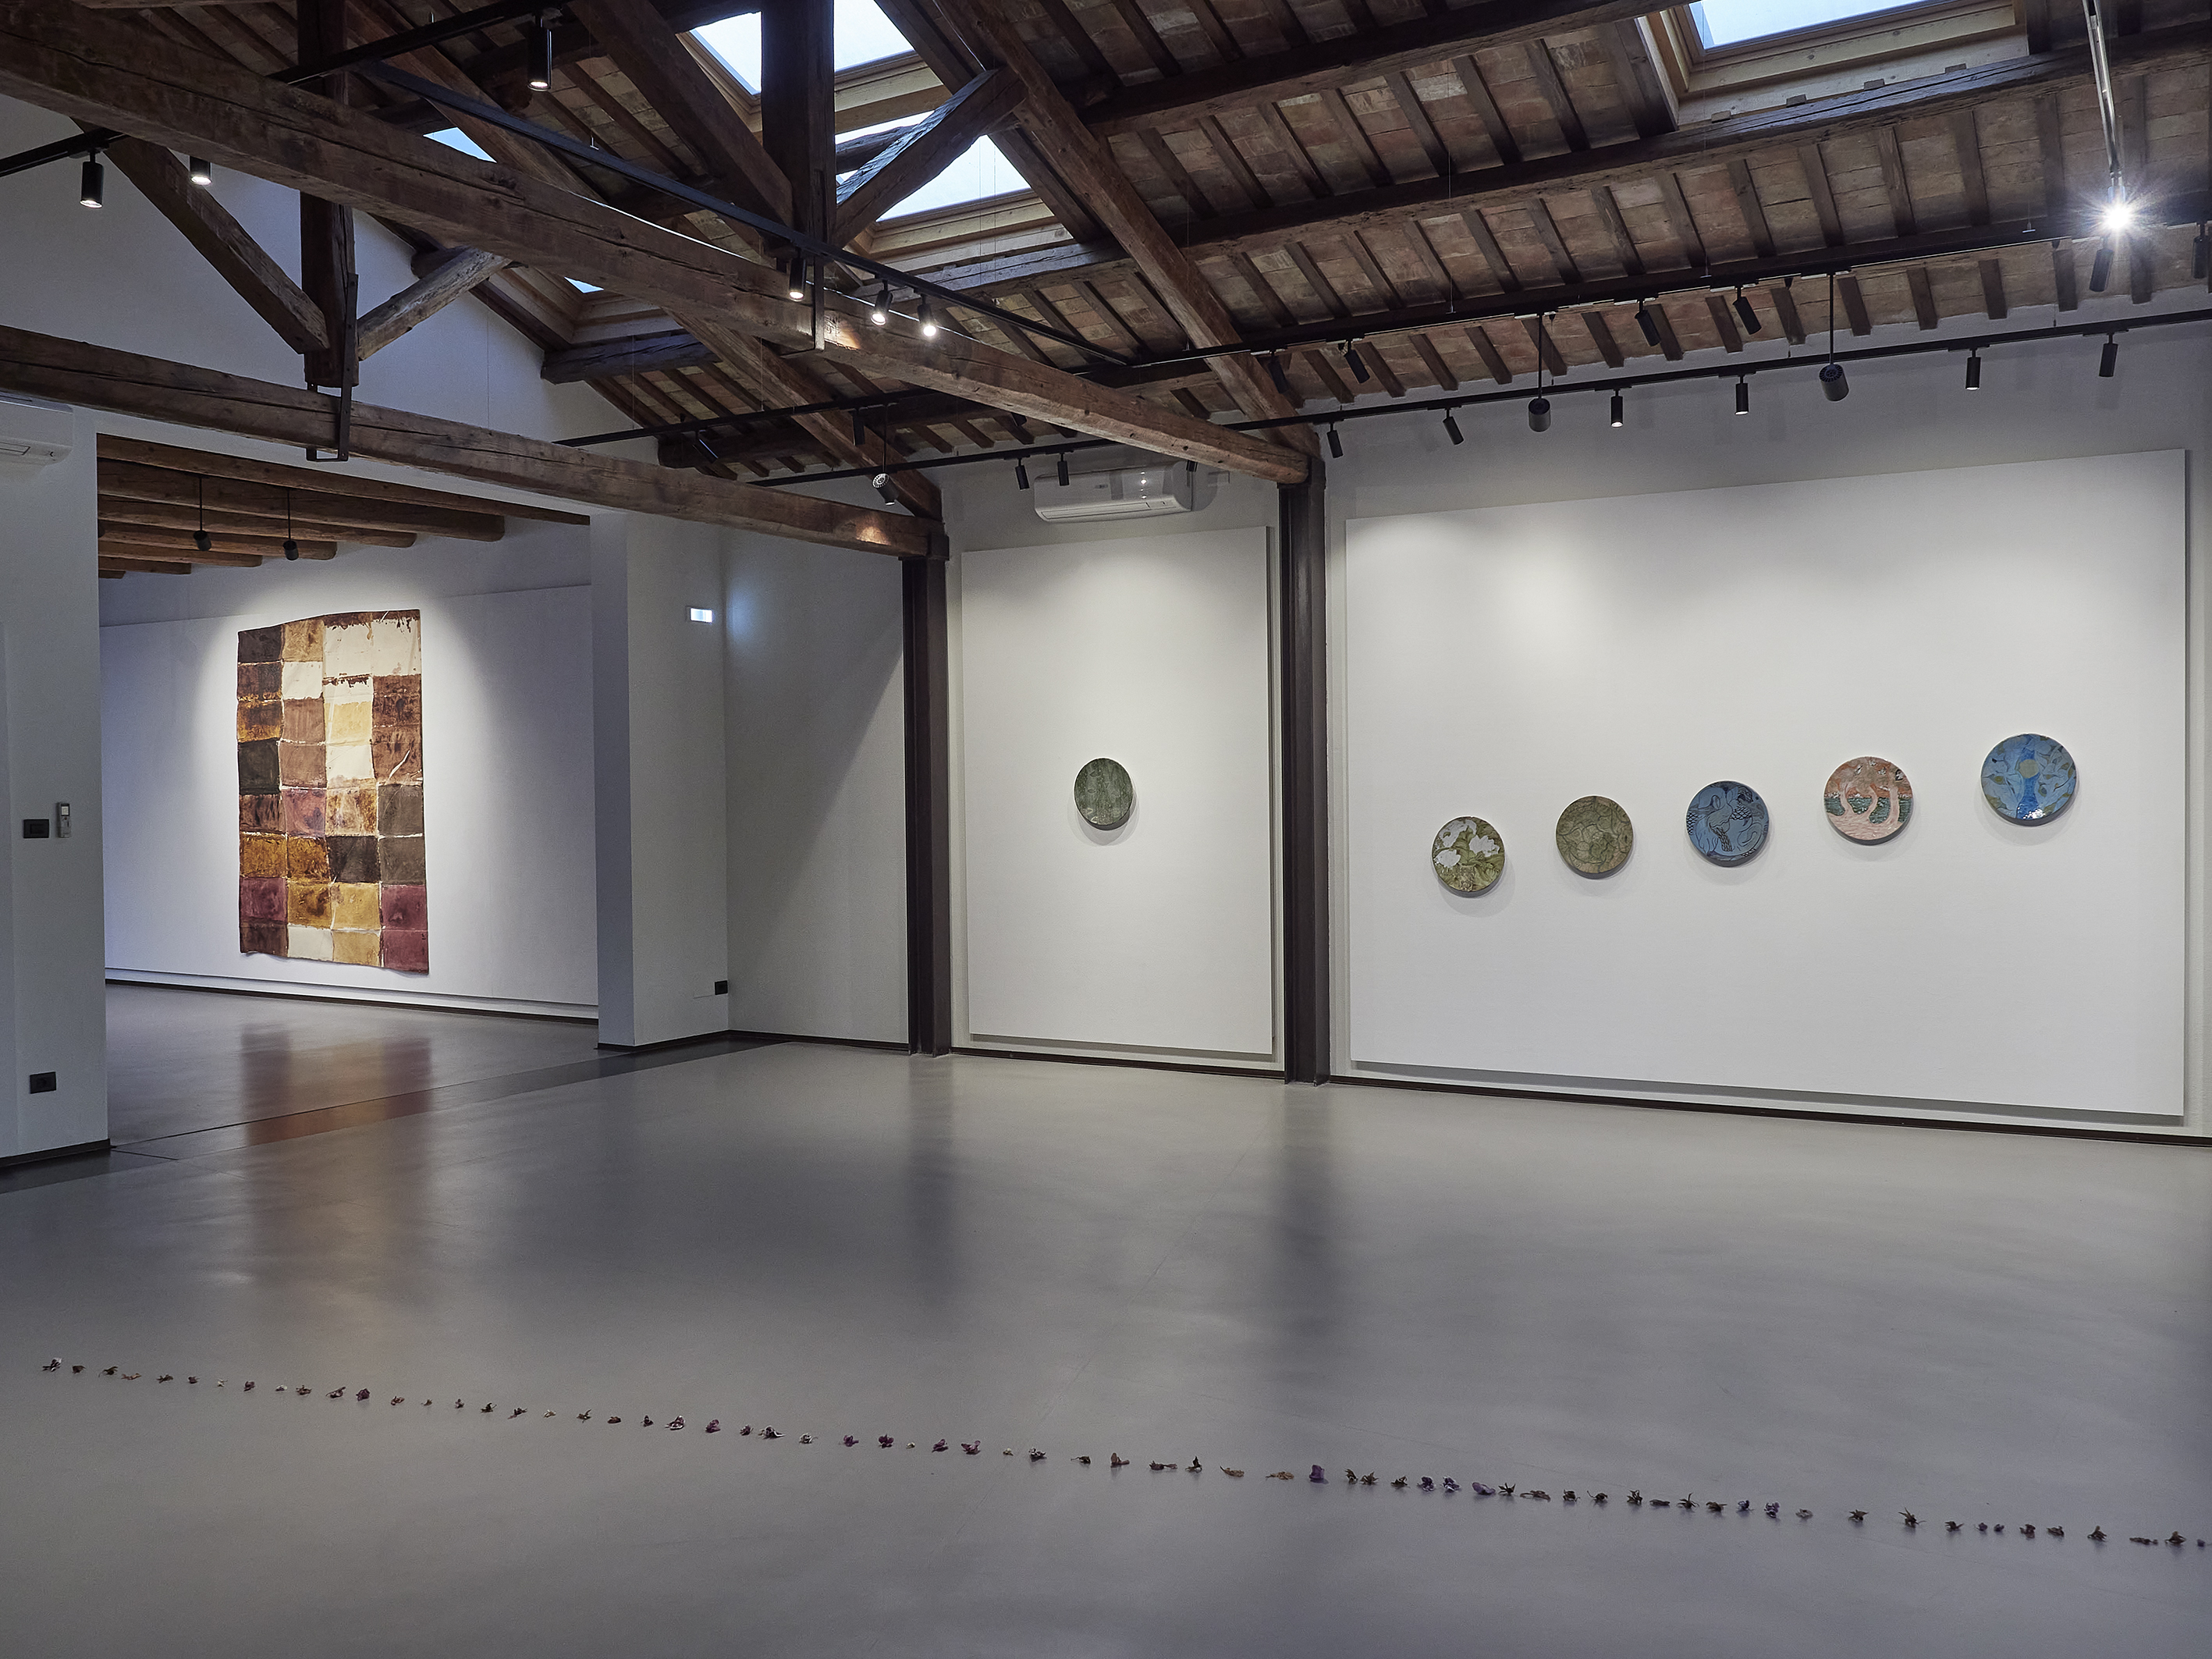 ANEMONI, Fondazione Sabe per l'Arte di Ravenna, installation view, ph. Daniele Casadio, Ravenna